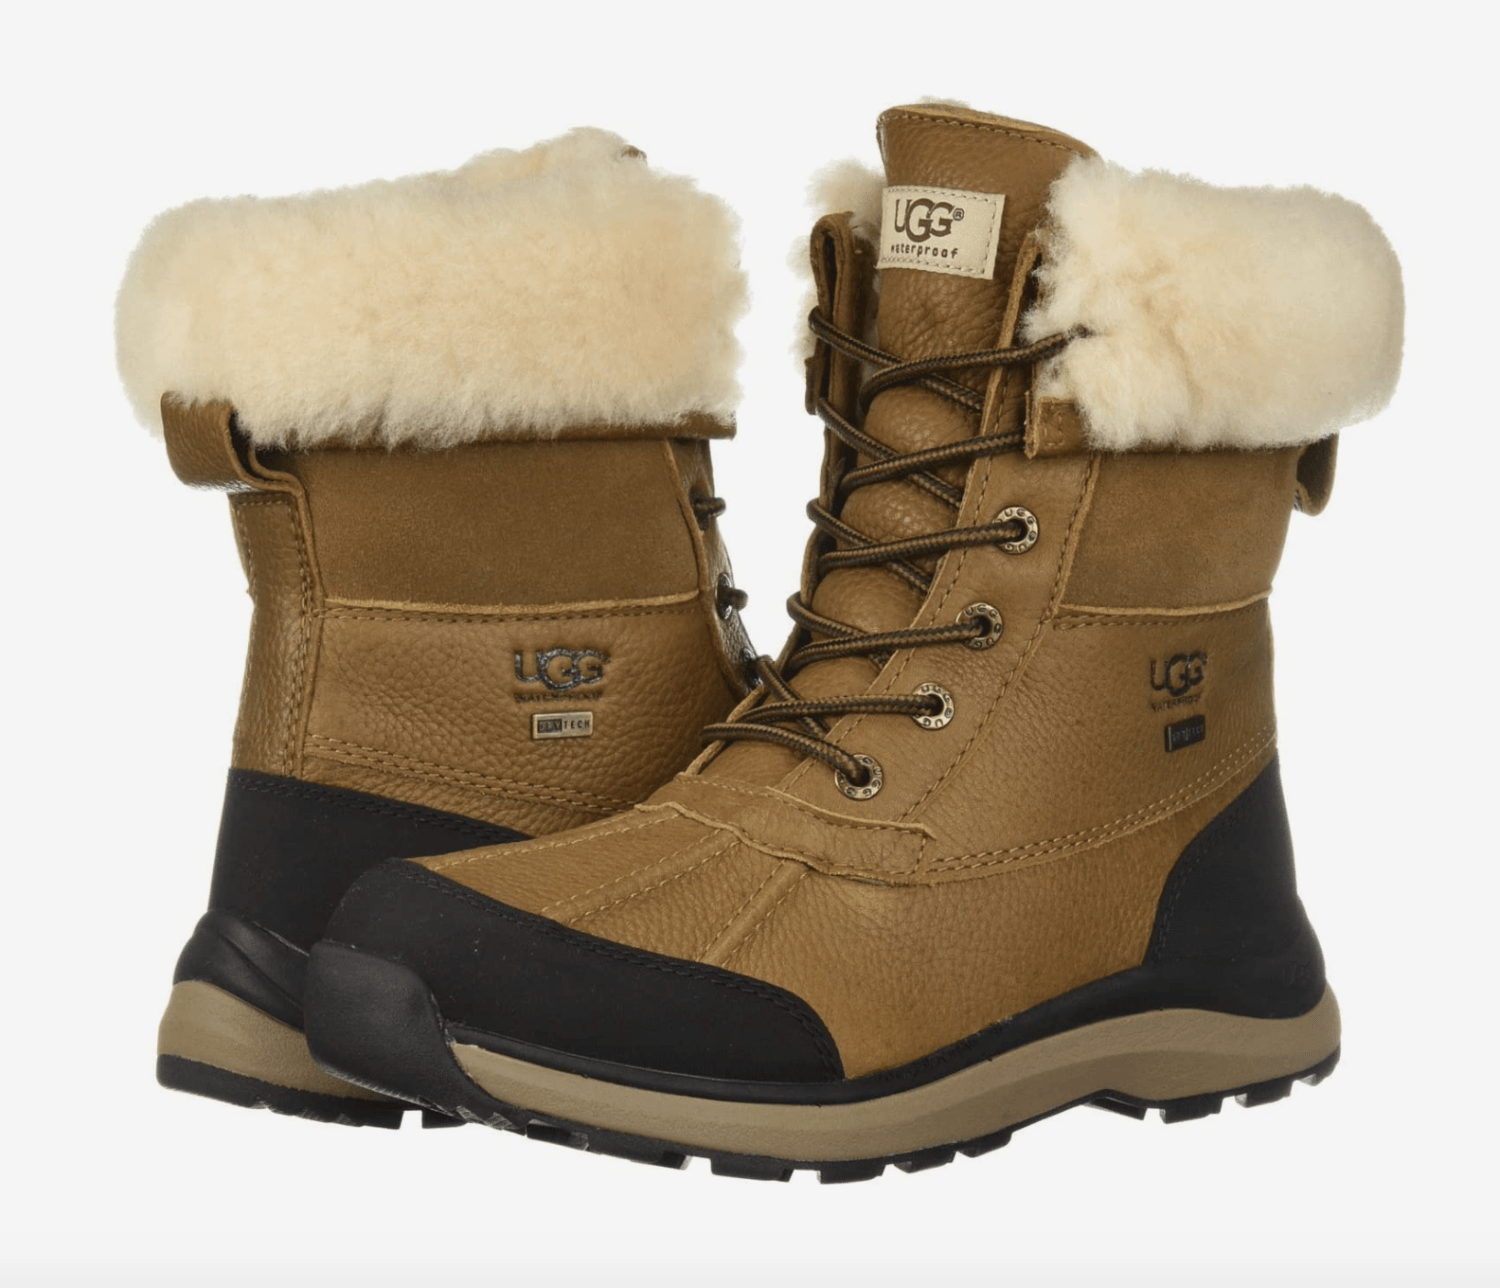 Winter Boots Women Check, Designs Boots Women, Snow Boots Design